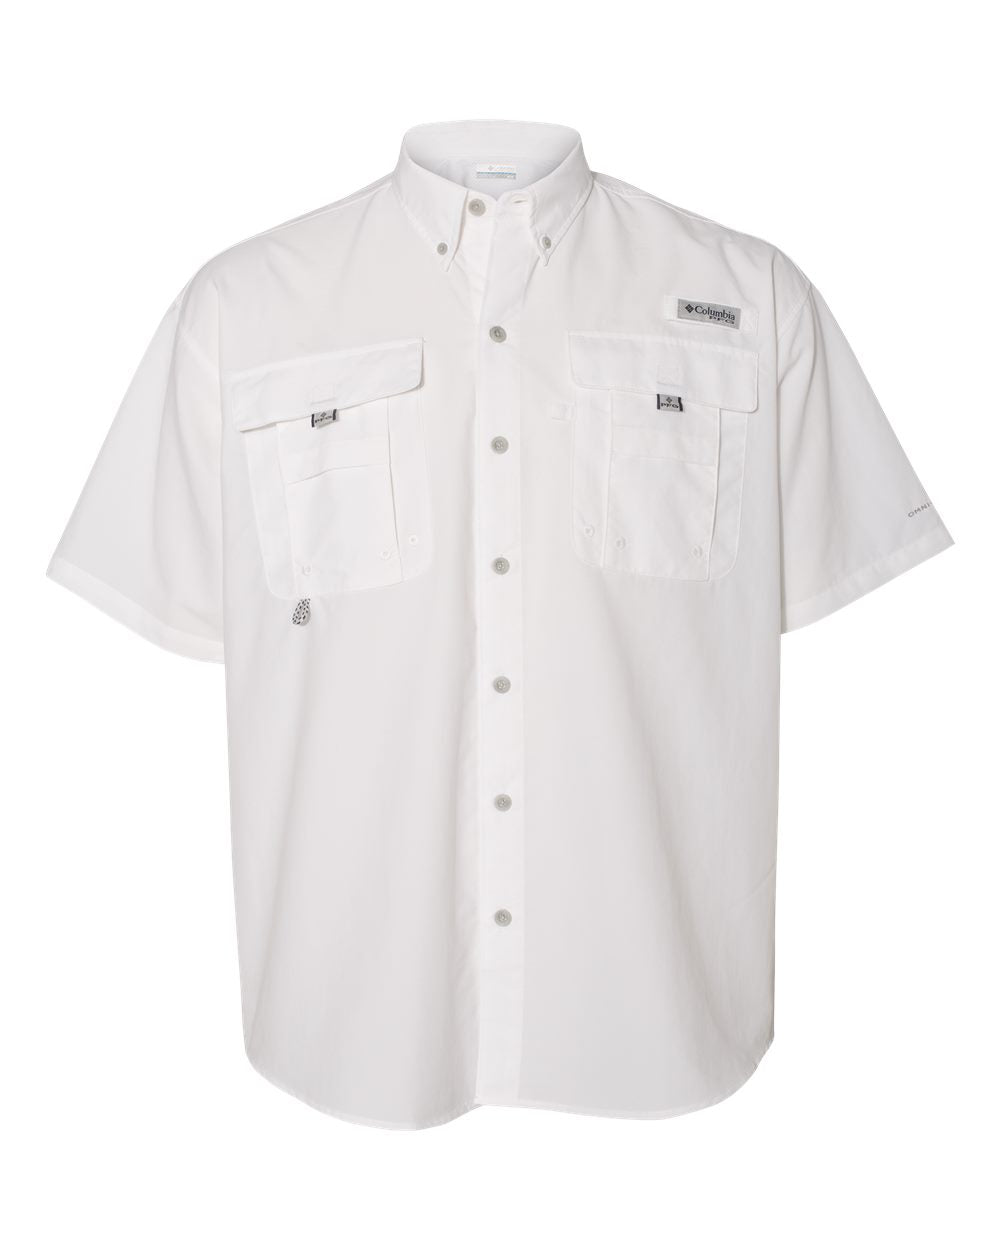 Columbia - PFG Bahama™ II Short Sleeve Shirt - 101165